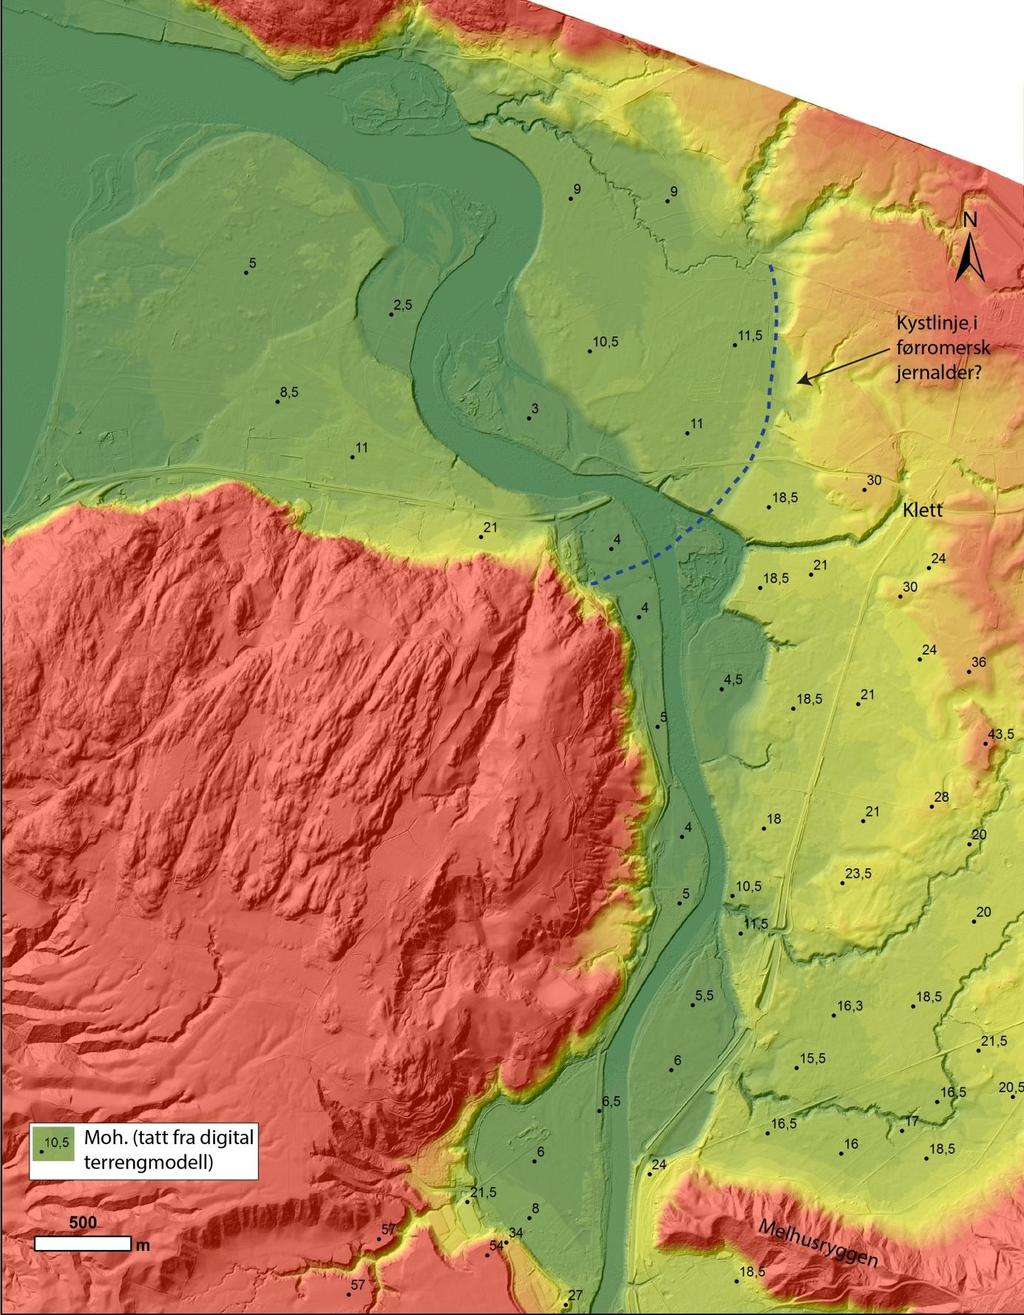 Figur 12. Mulig plassering av kystlinje i førromersk jernalder (500 f.kr.- år 0). Digital terrengmodell over nordlig del av Gauldalen, røde områder ligger høyt terrenget, gul og grønn er i dalbunnen.